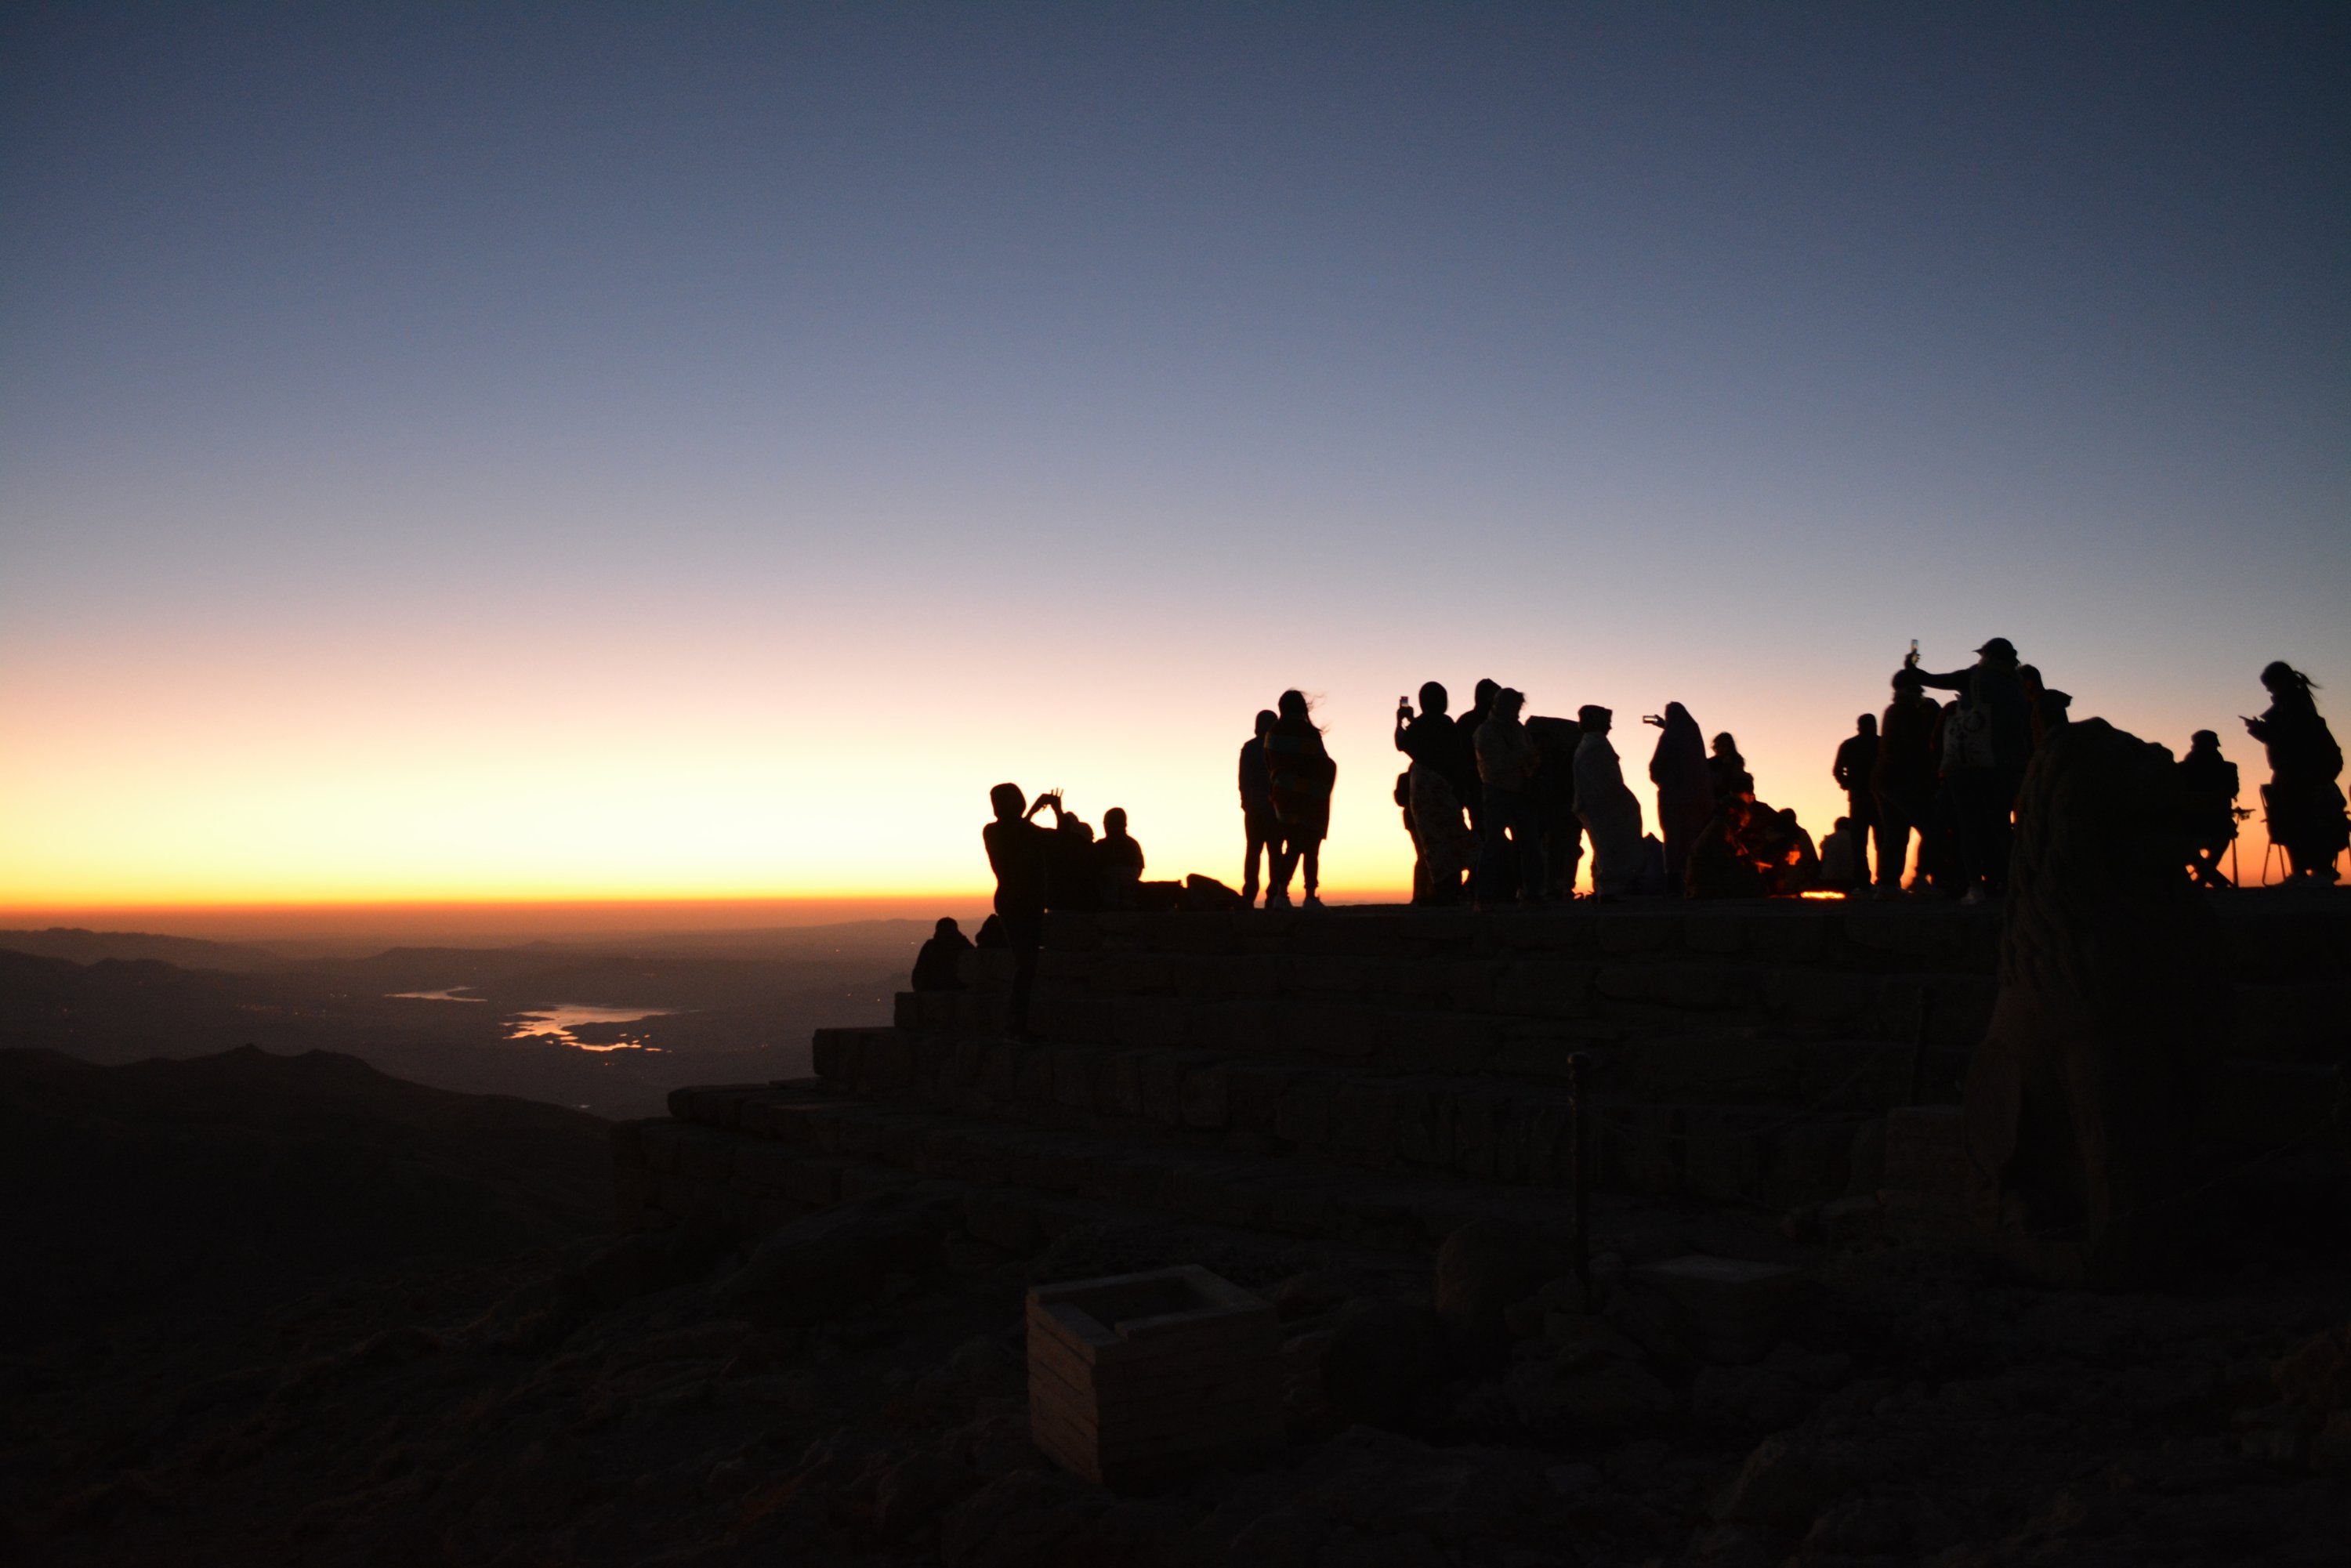 Matahari terbit di Gunung Nemrut saat orang-orang mencoba mengabadikan momen unik, Adıyaman, Türkiye, 1 Oktober 2022. (Foto oleh Mehmet elik)